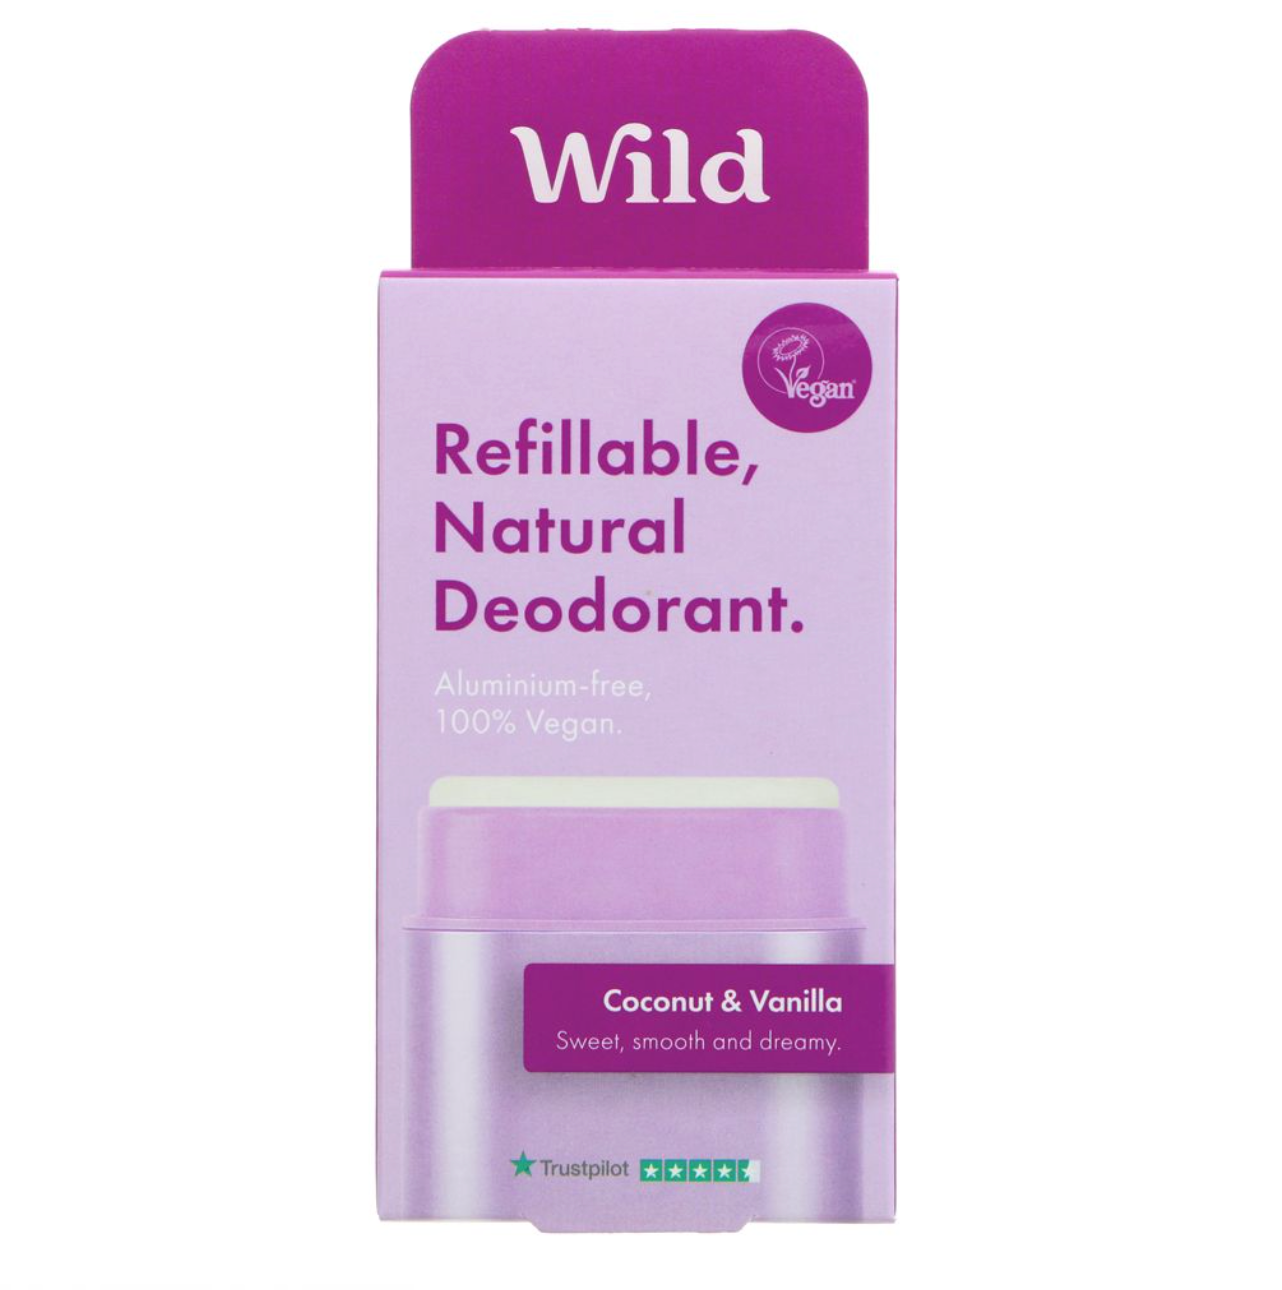 Wild Deodorant - Purple Case + Refill - Coconut & Vanilla